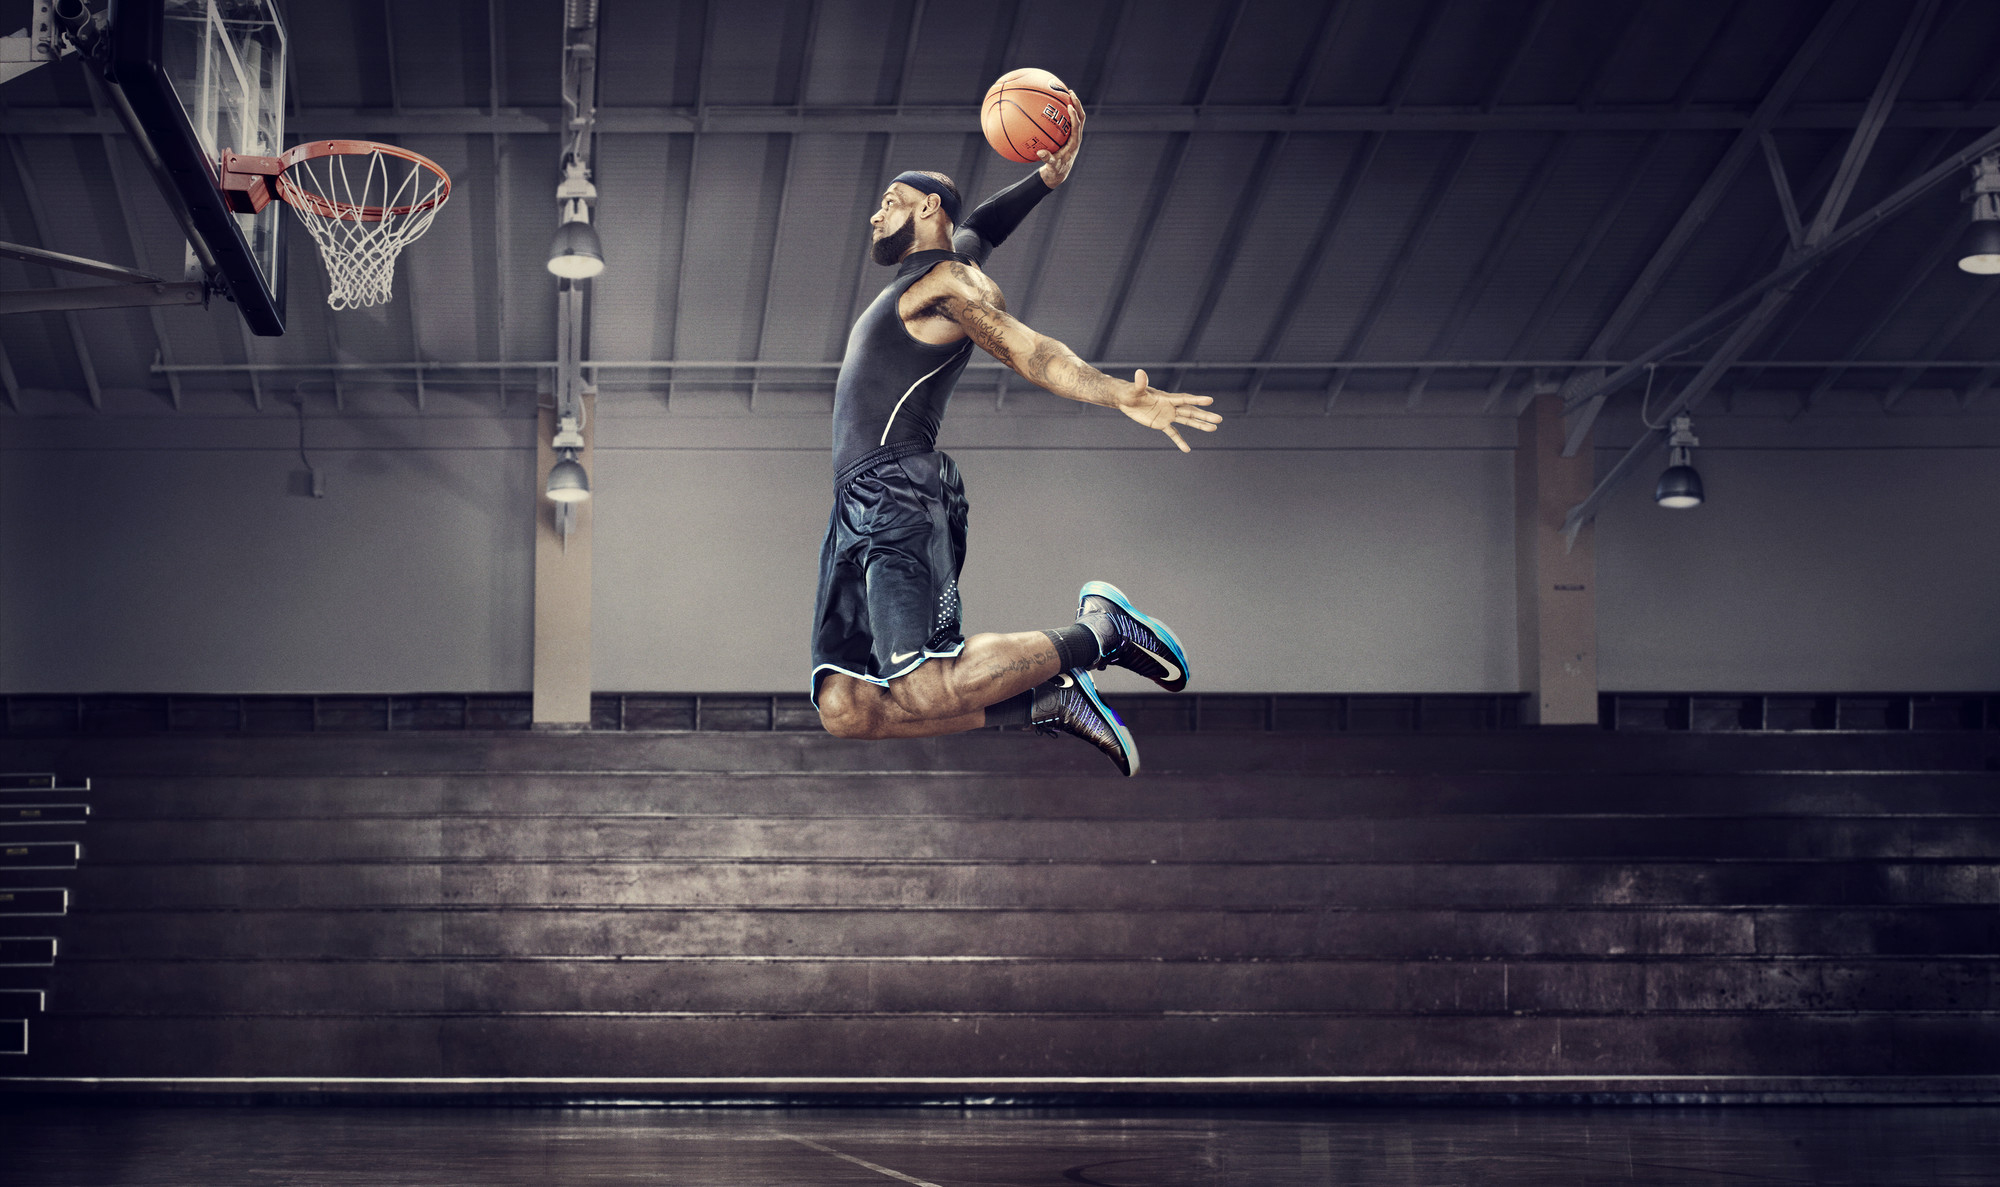 Découvrez l’expérience Nike+, l’association du numérique et du sport